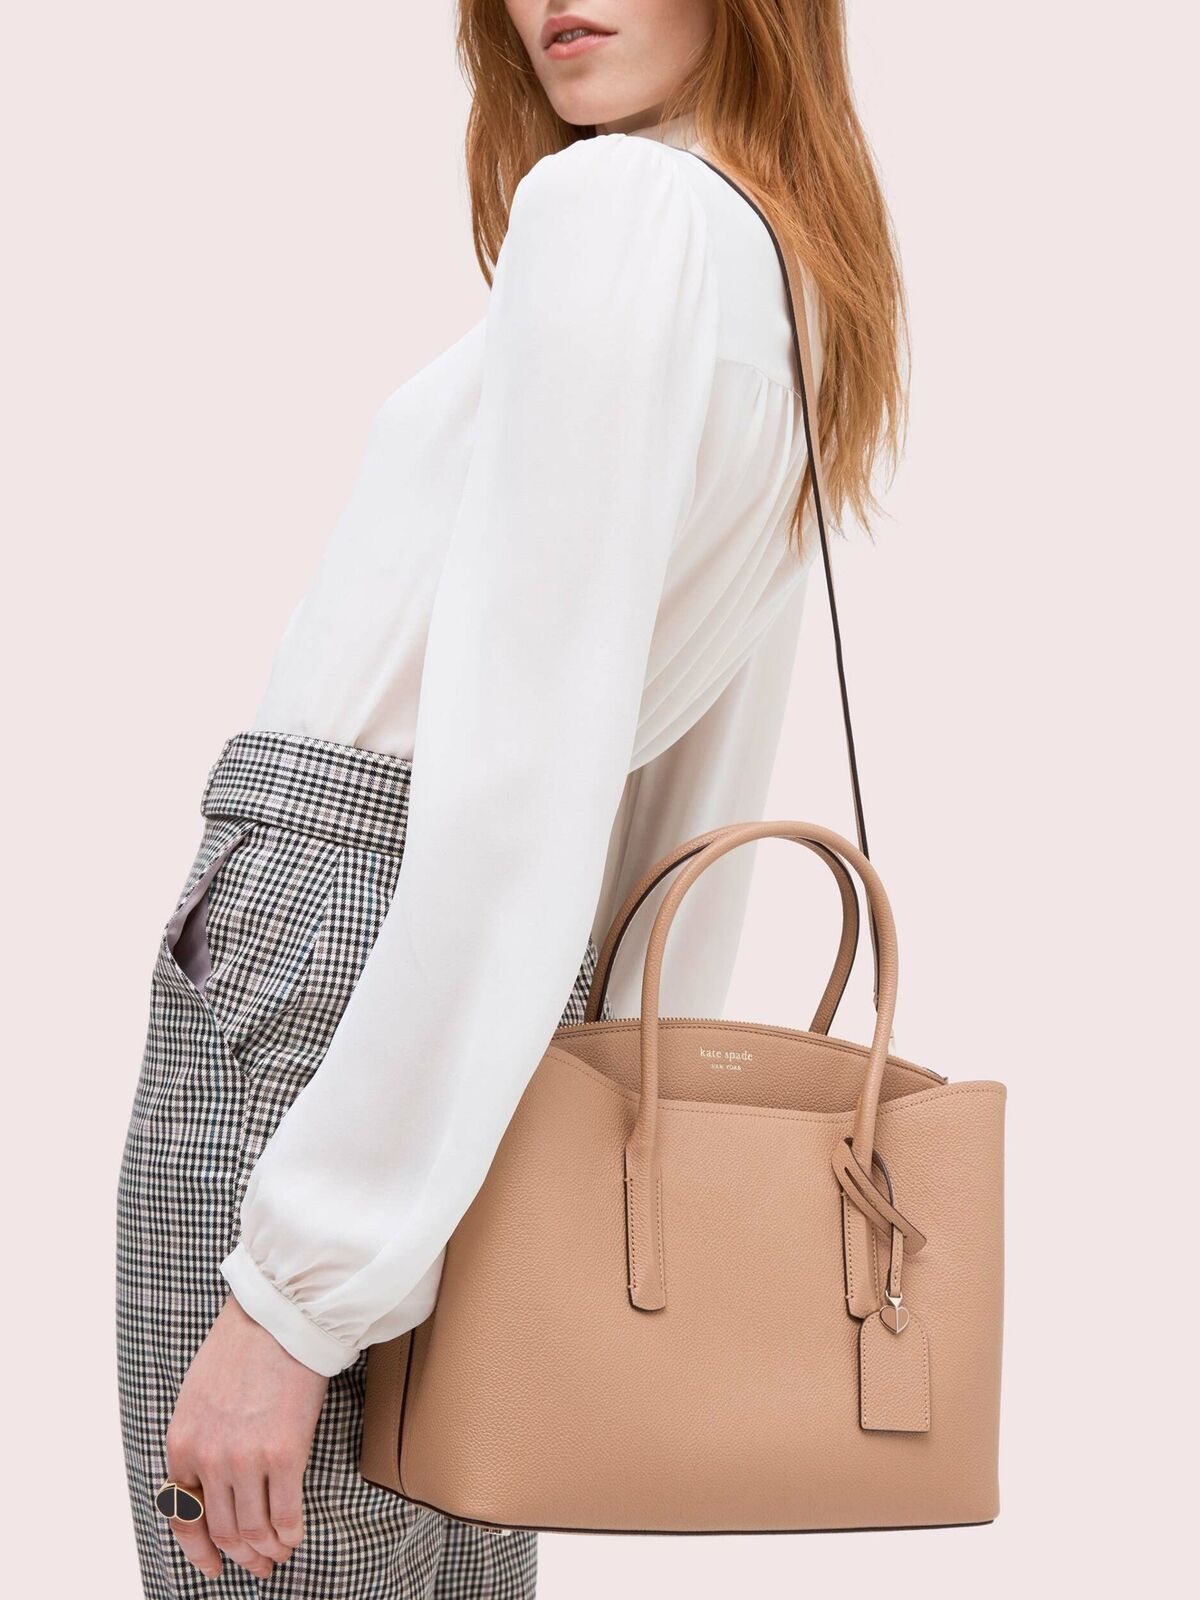 Kate Spade - Beige Pebbled Leather Shoulder Bag